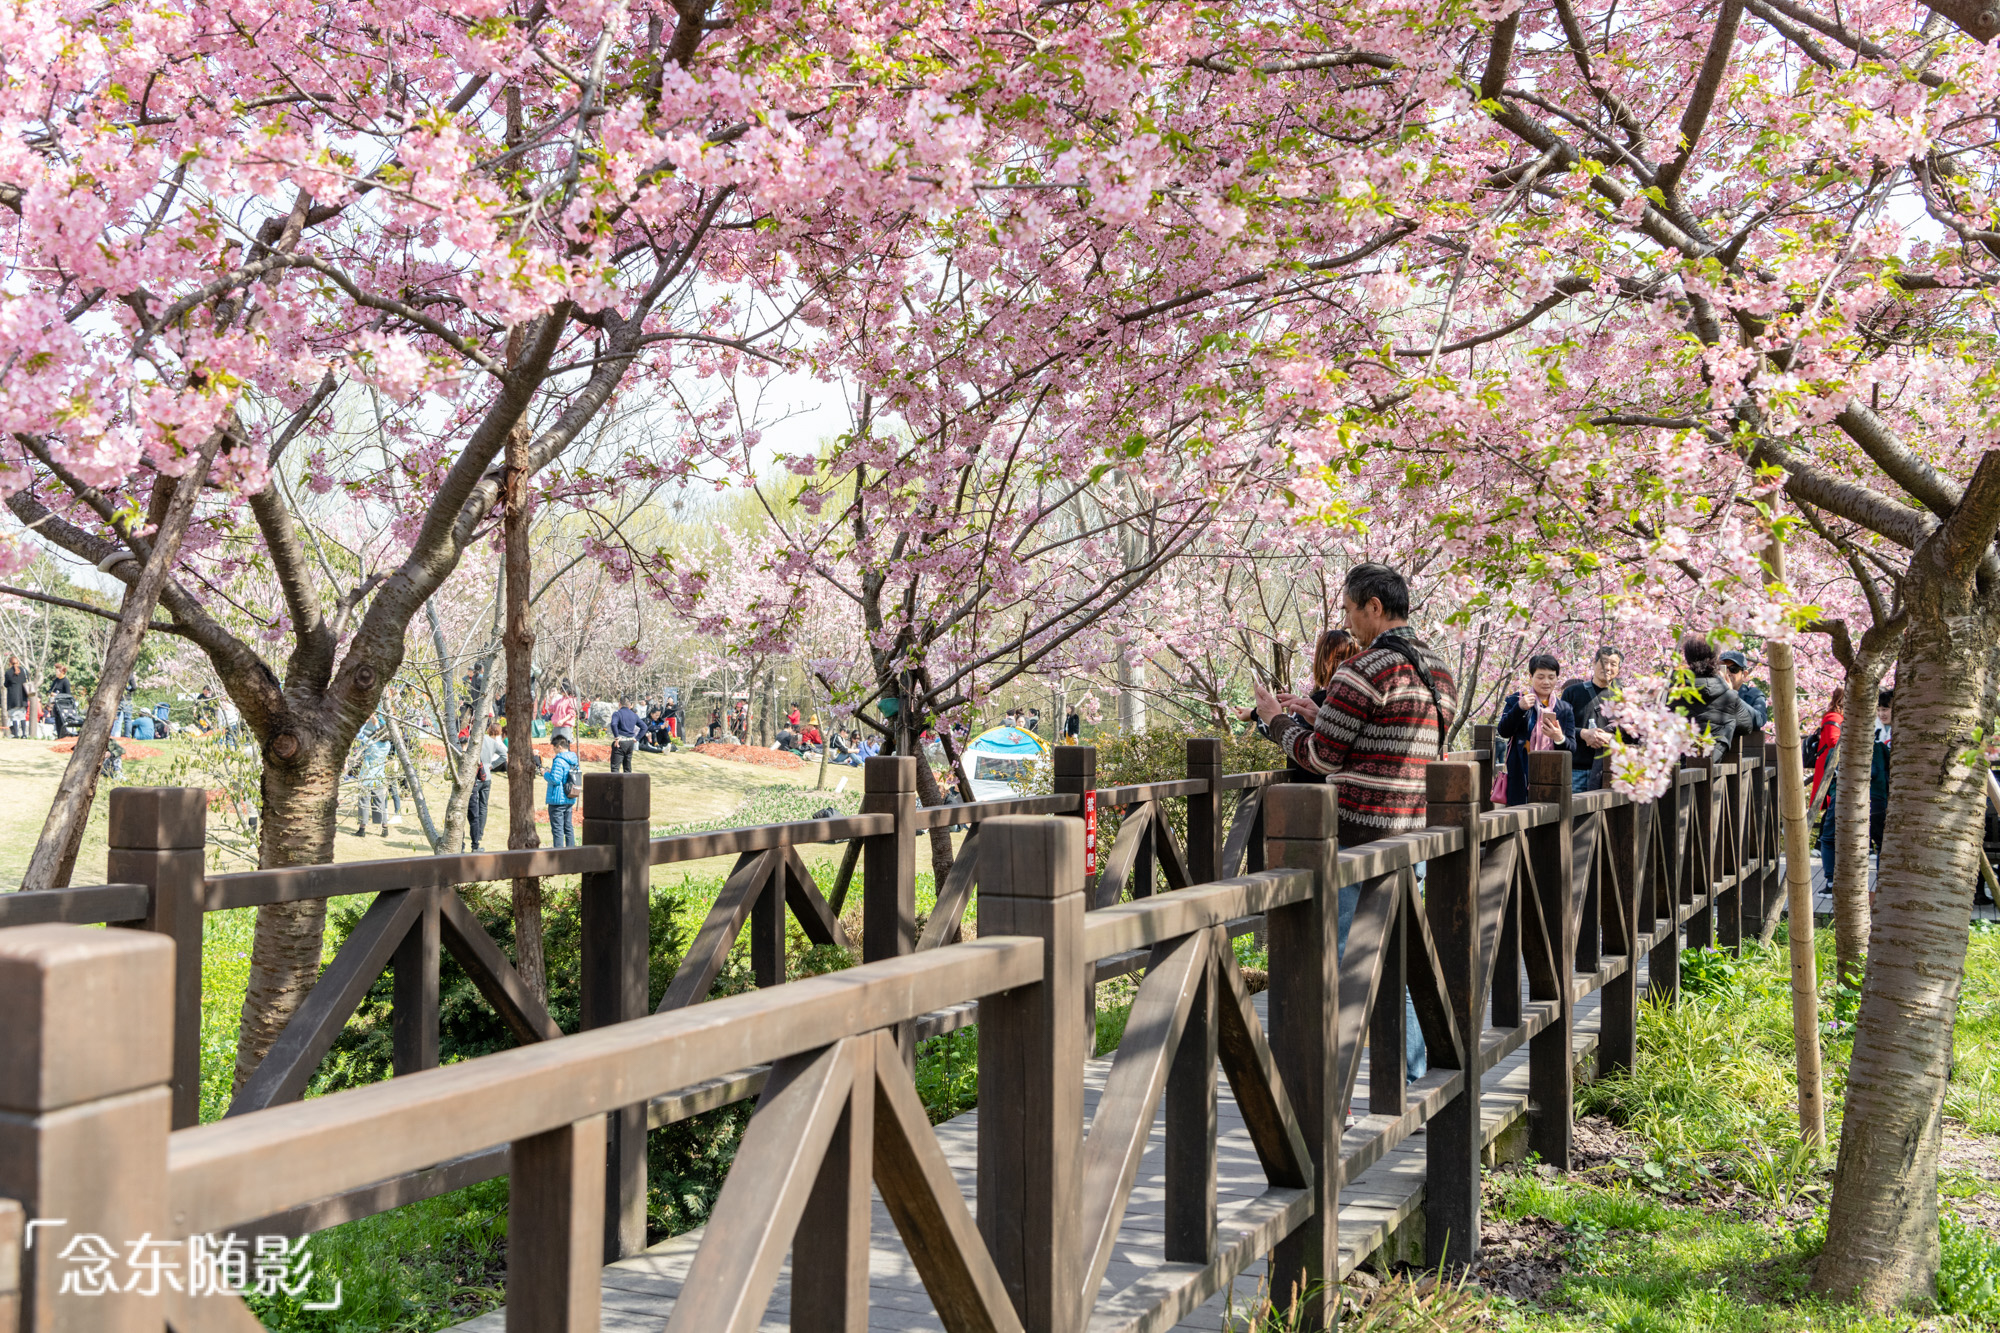 樱花开了!上海顾村公园繁花满枝头,赏樱好去处